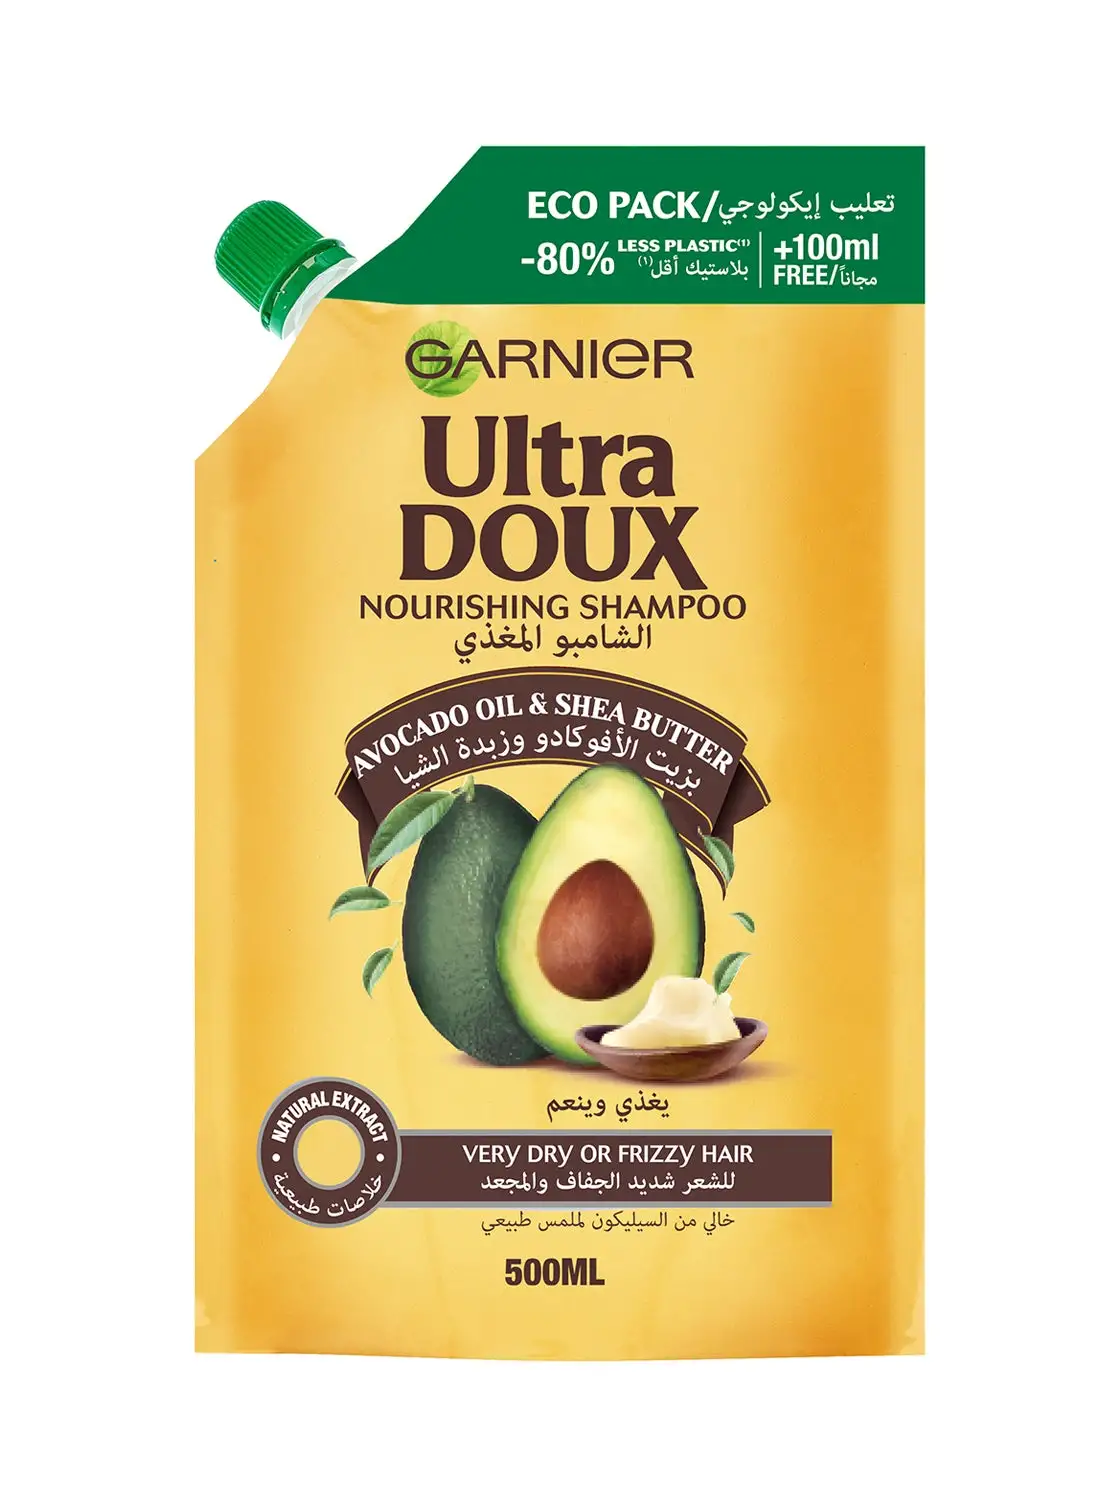 Garnier Ultra Doux Avocado Oil and Shea Butter Nourishing Shampoo Eco Pack 500ml